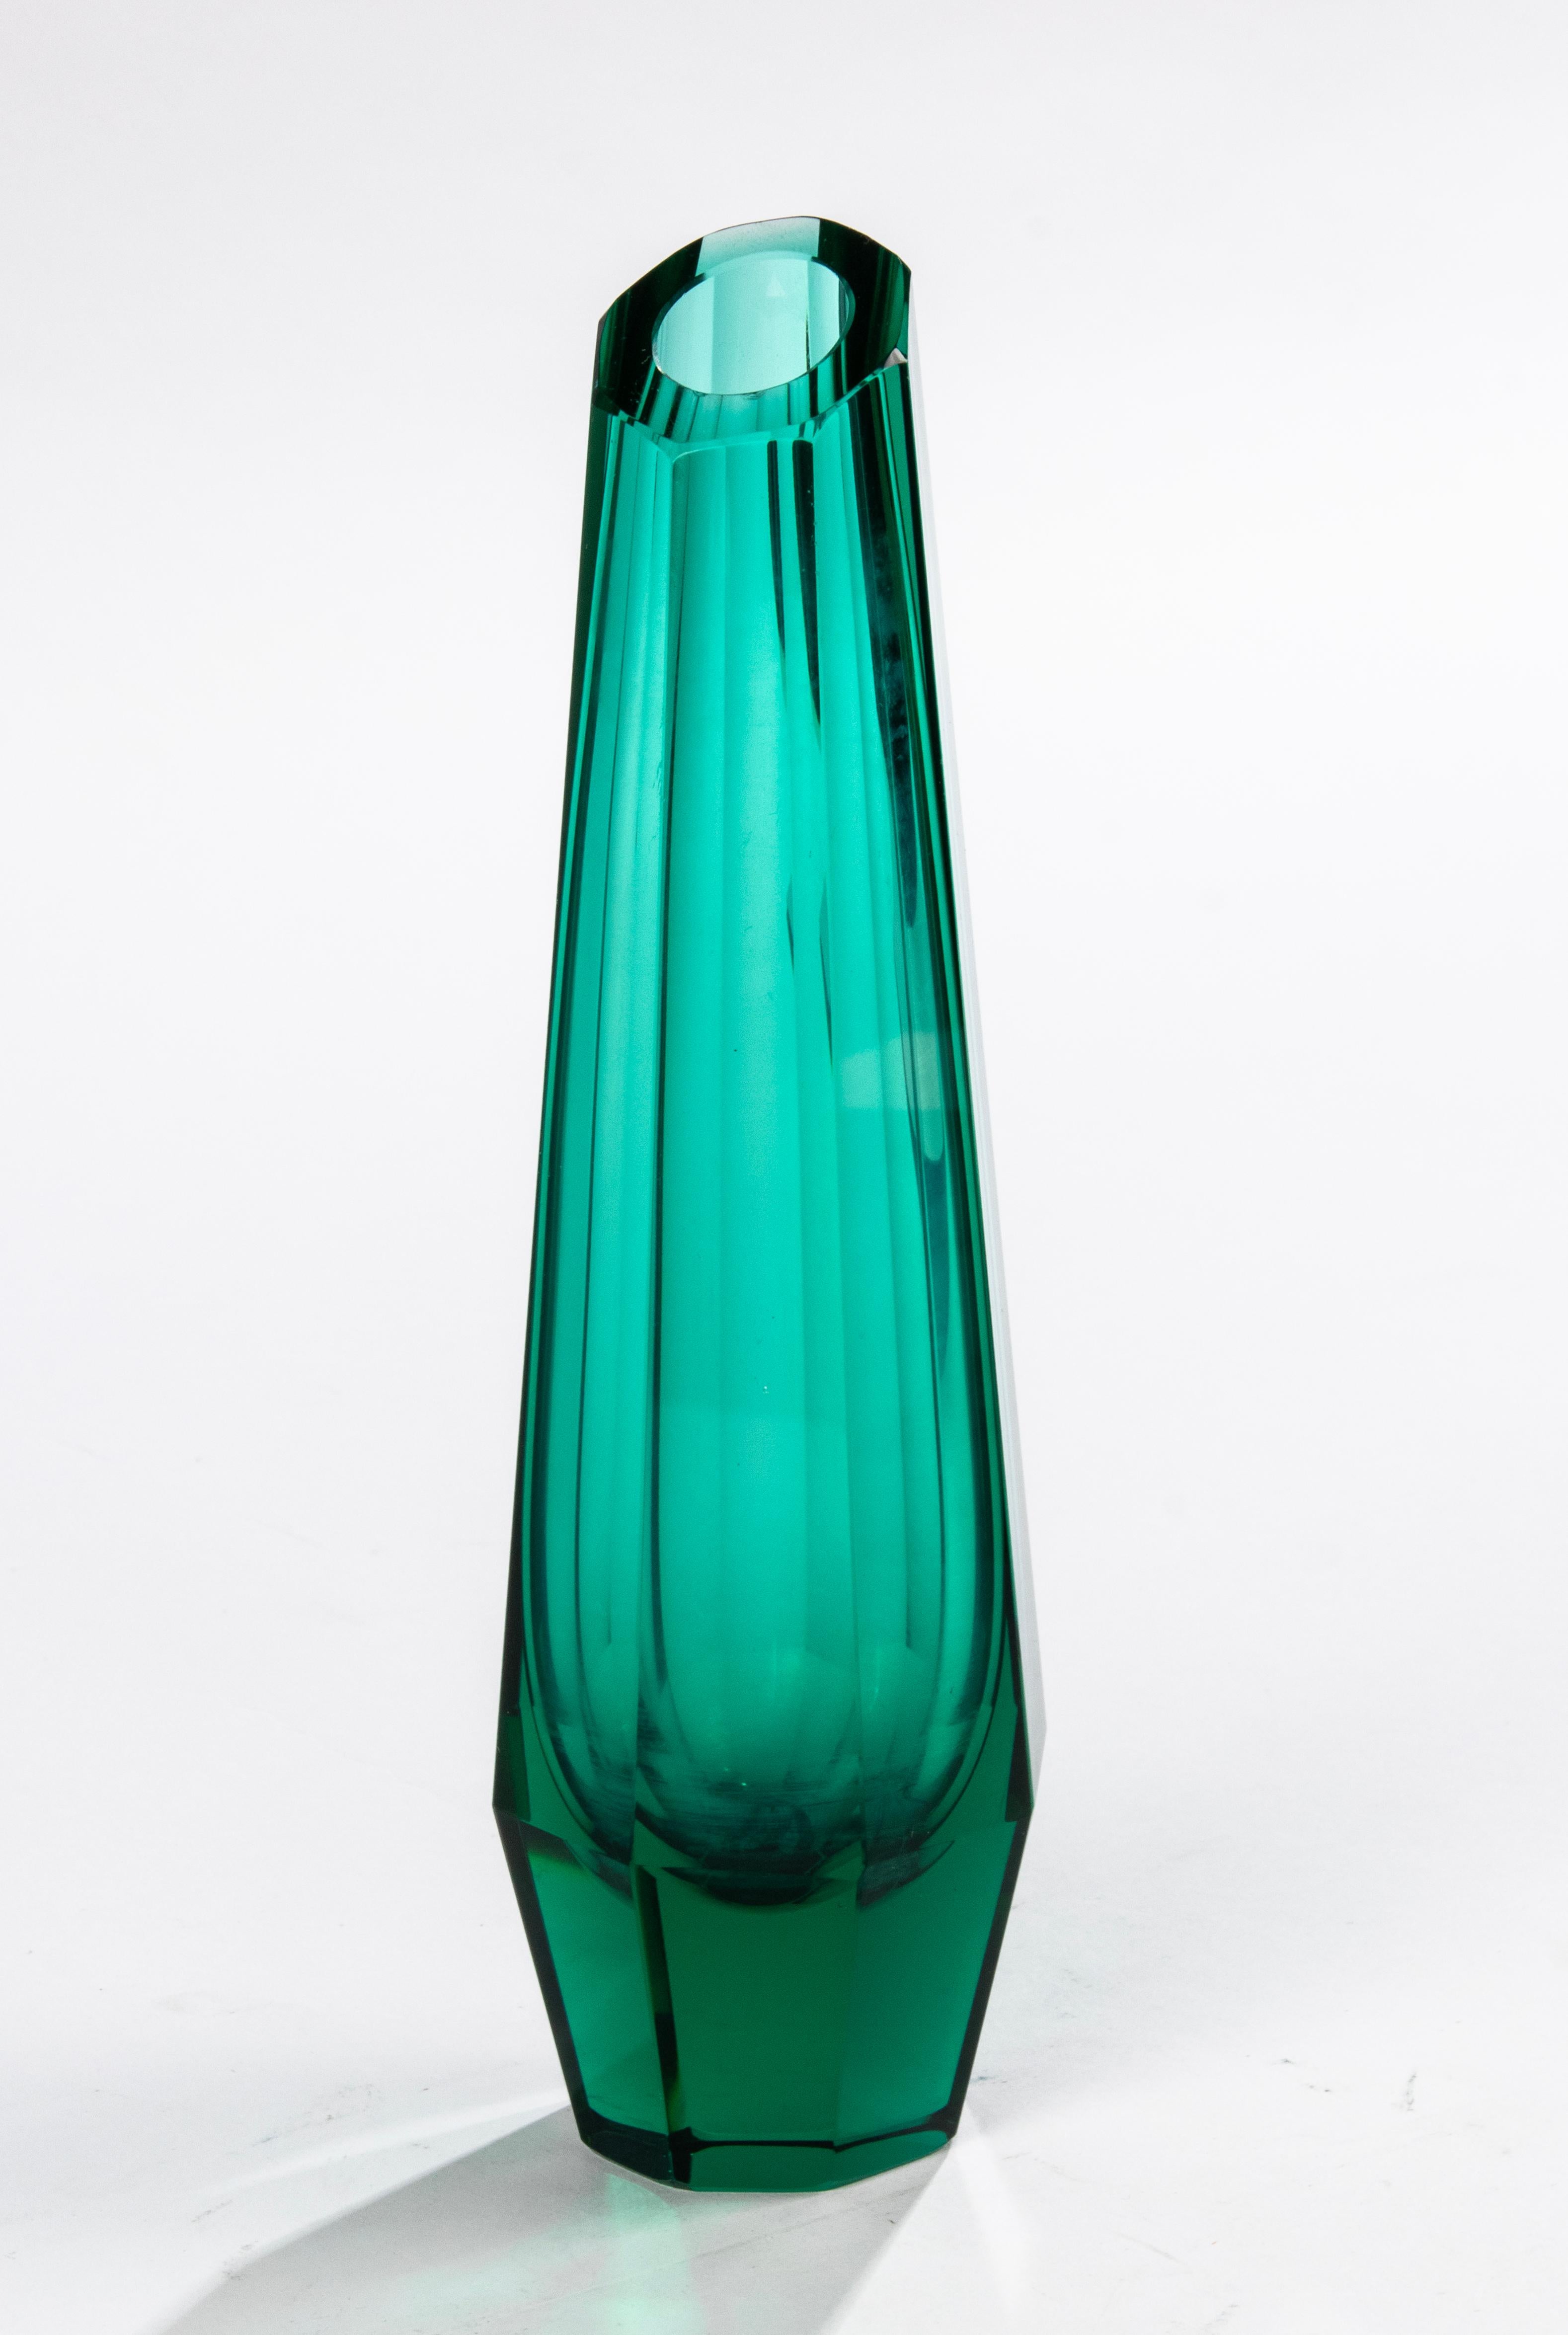 Magnifique vase en cristal facetté art déco attribué à Josef Hoffmann pour Moser (Tchécoslovaquie, années 1930). Le vase est en verre de cristal épais émeraude/vert forêt magnifiquement facetté.
Le vase est en très bon état. 

Dimensions : 6,5 x 6,5